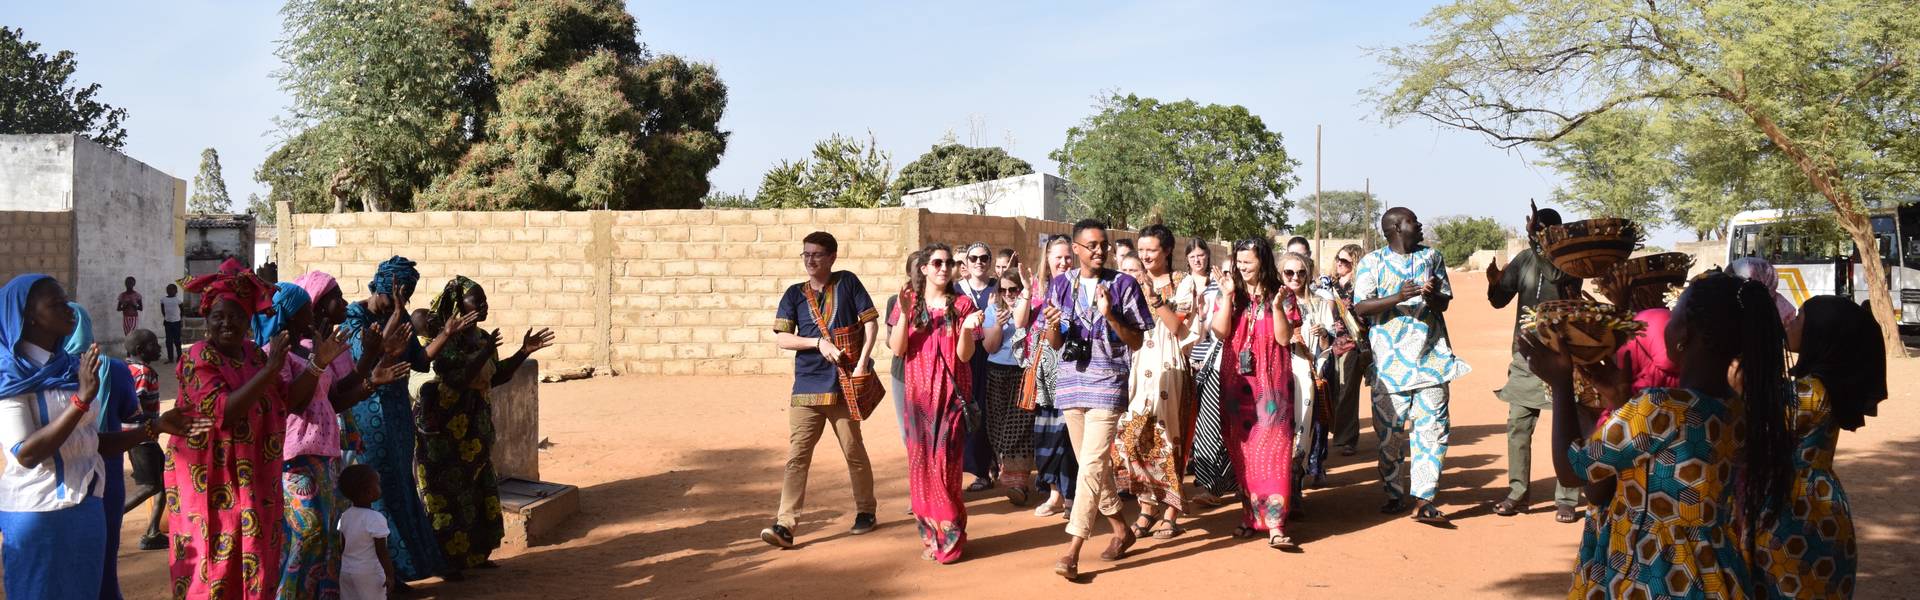 Senegal village visit, faculty-led immersion